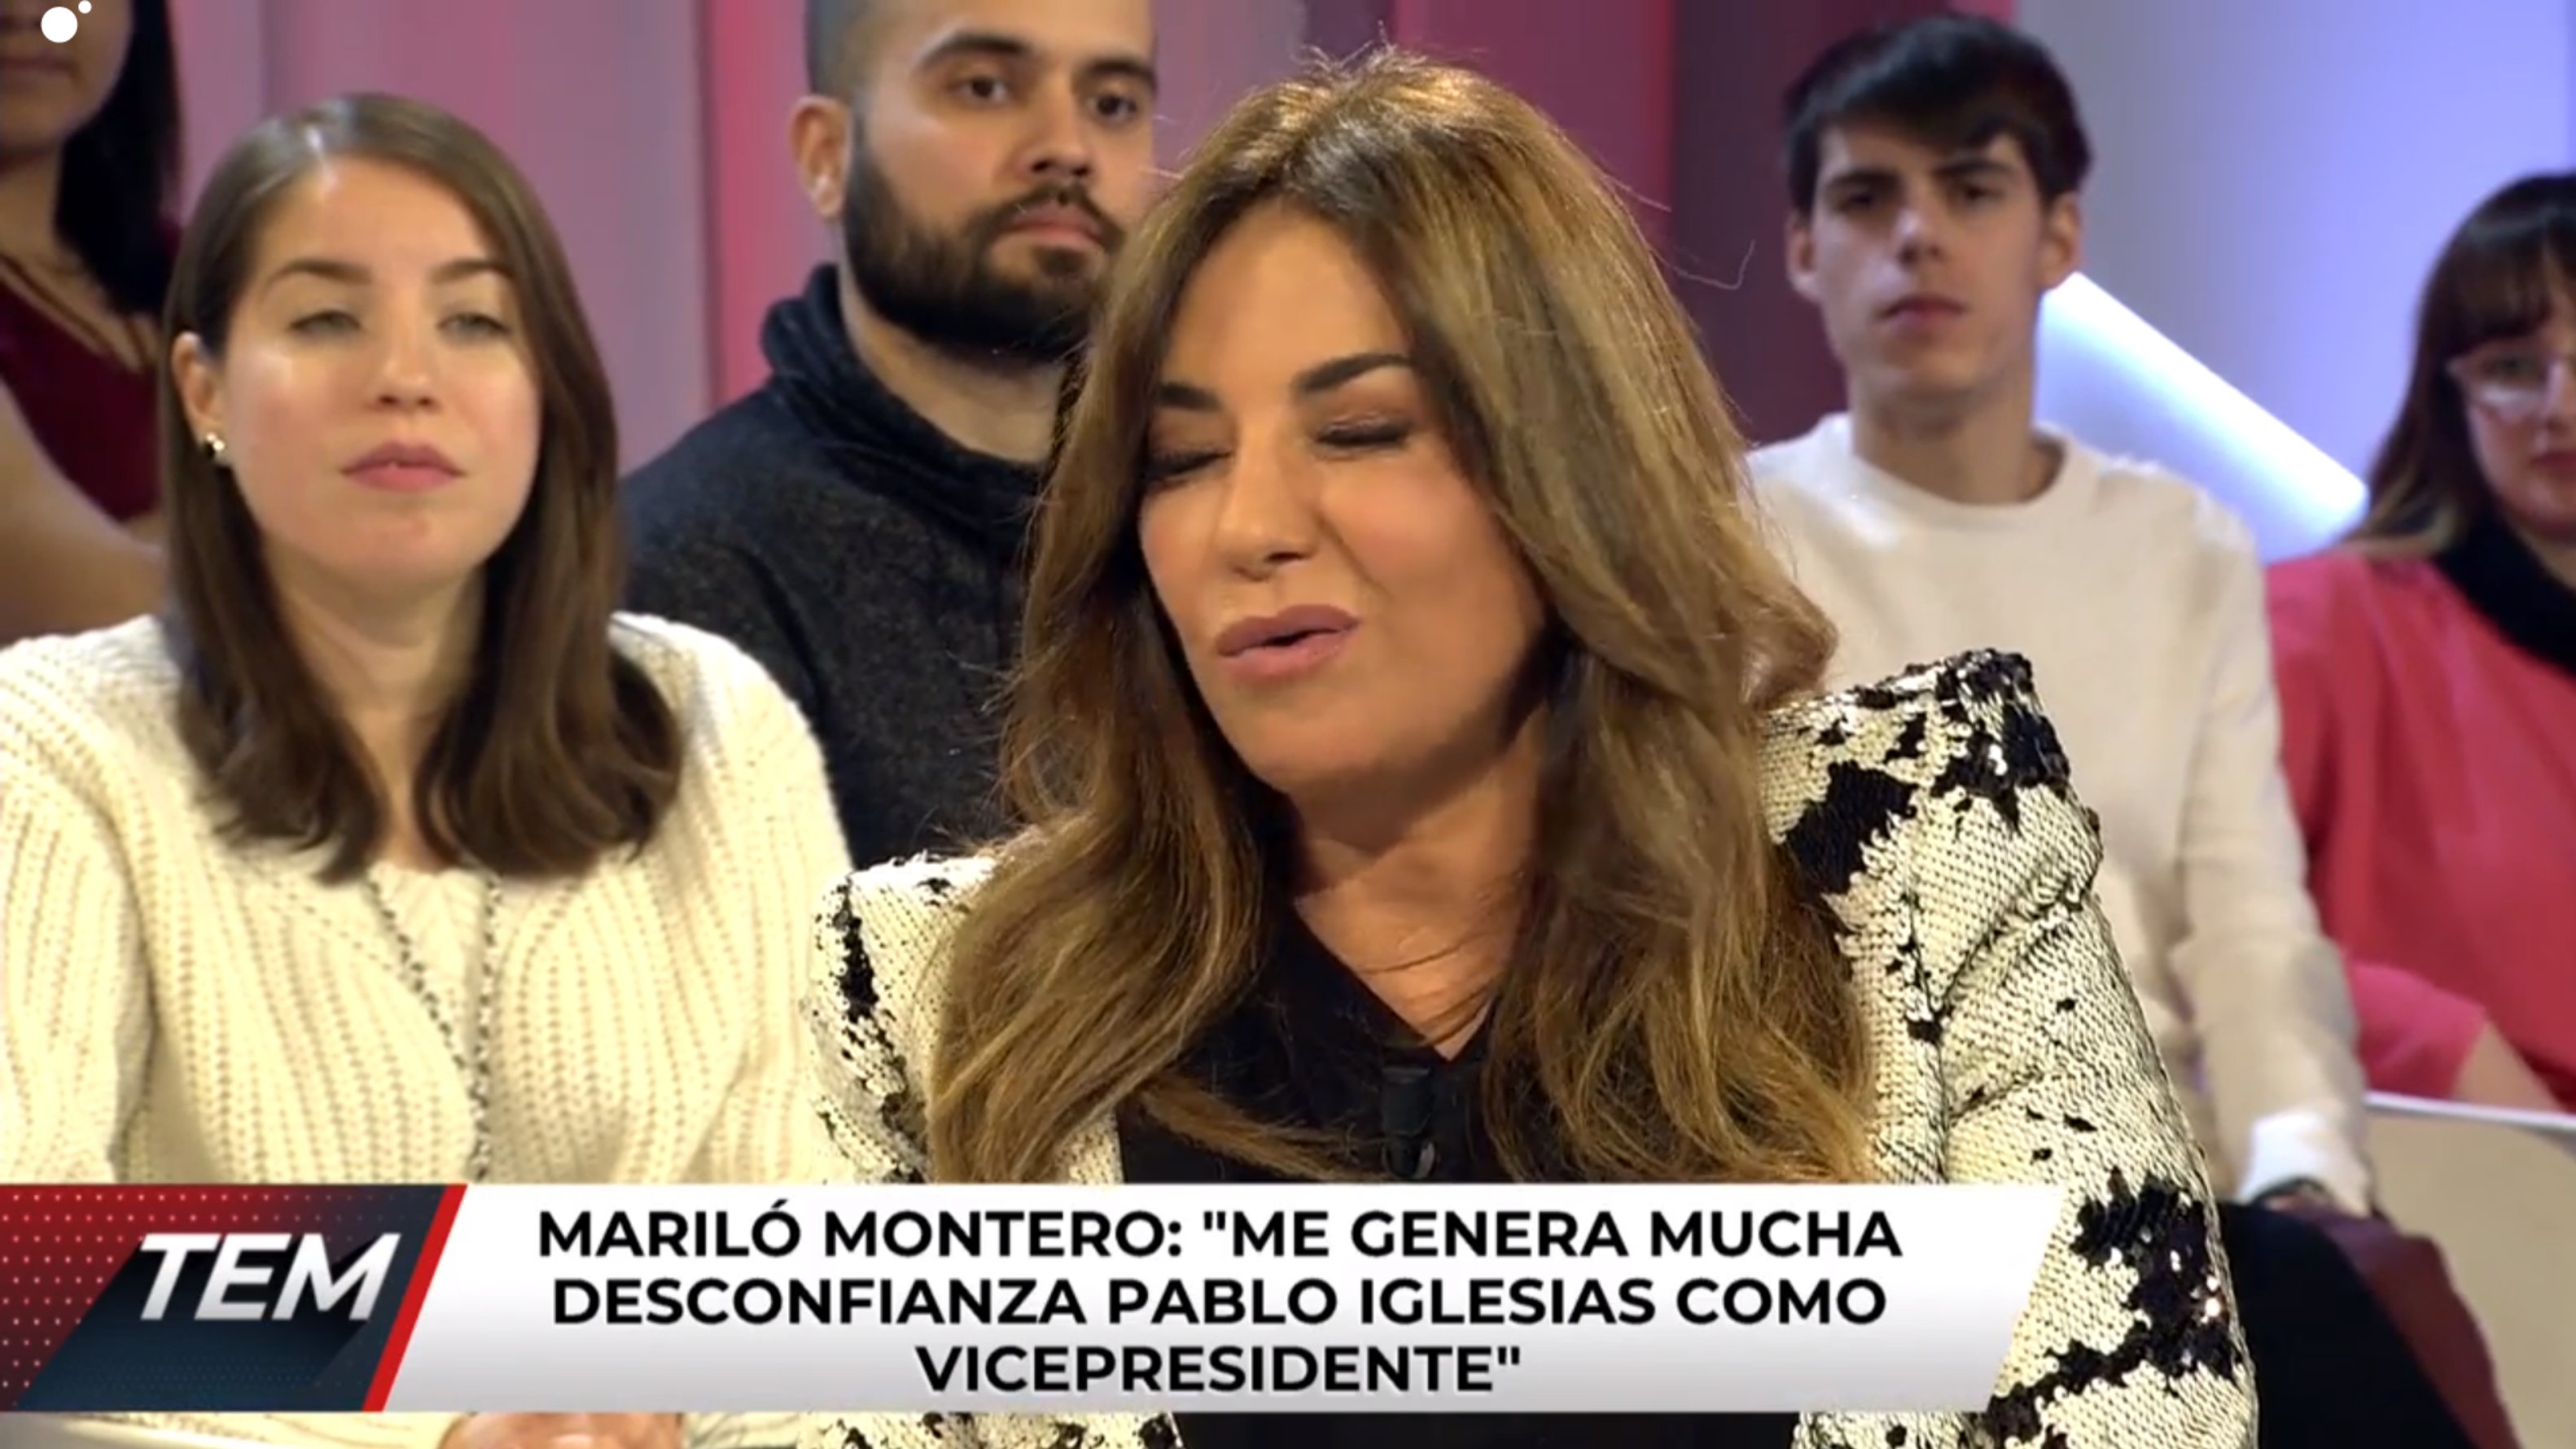 Mariló Montero, ridícula e incendiaria: "Catalunya es mía"